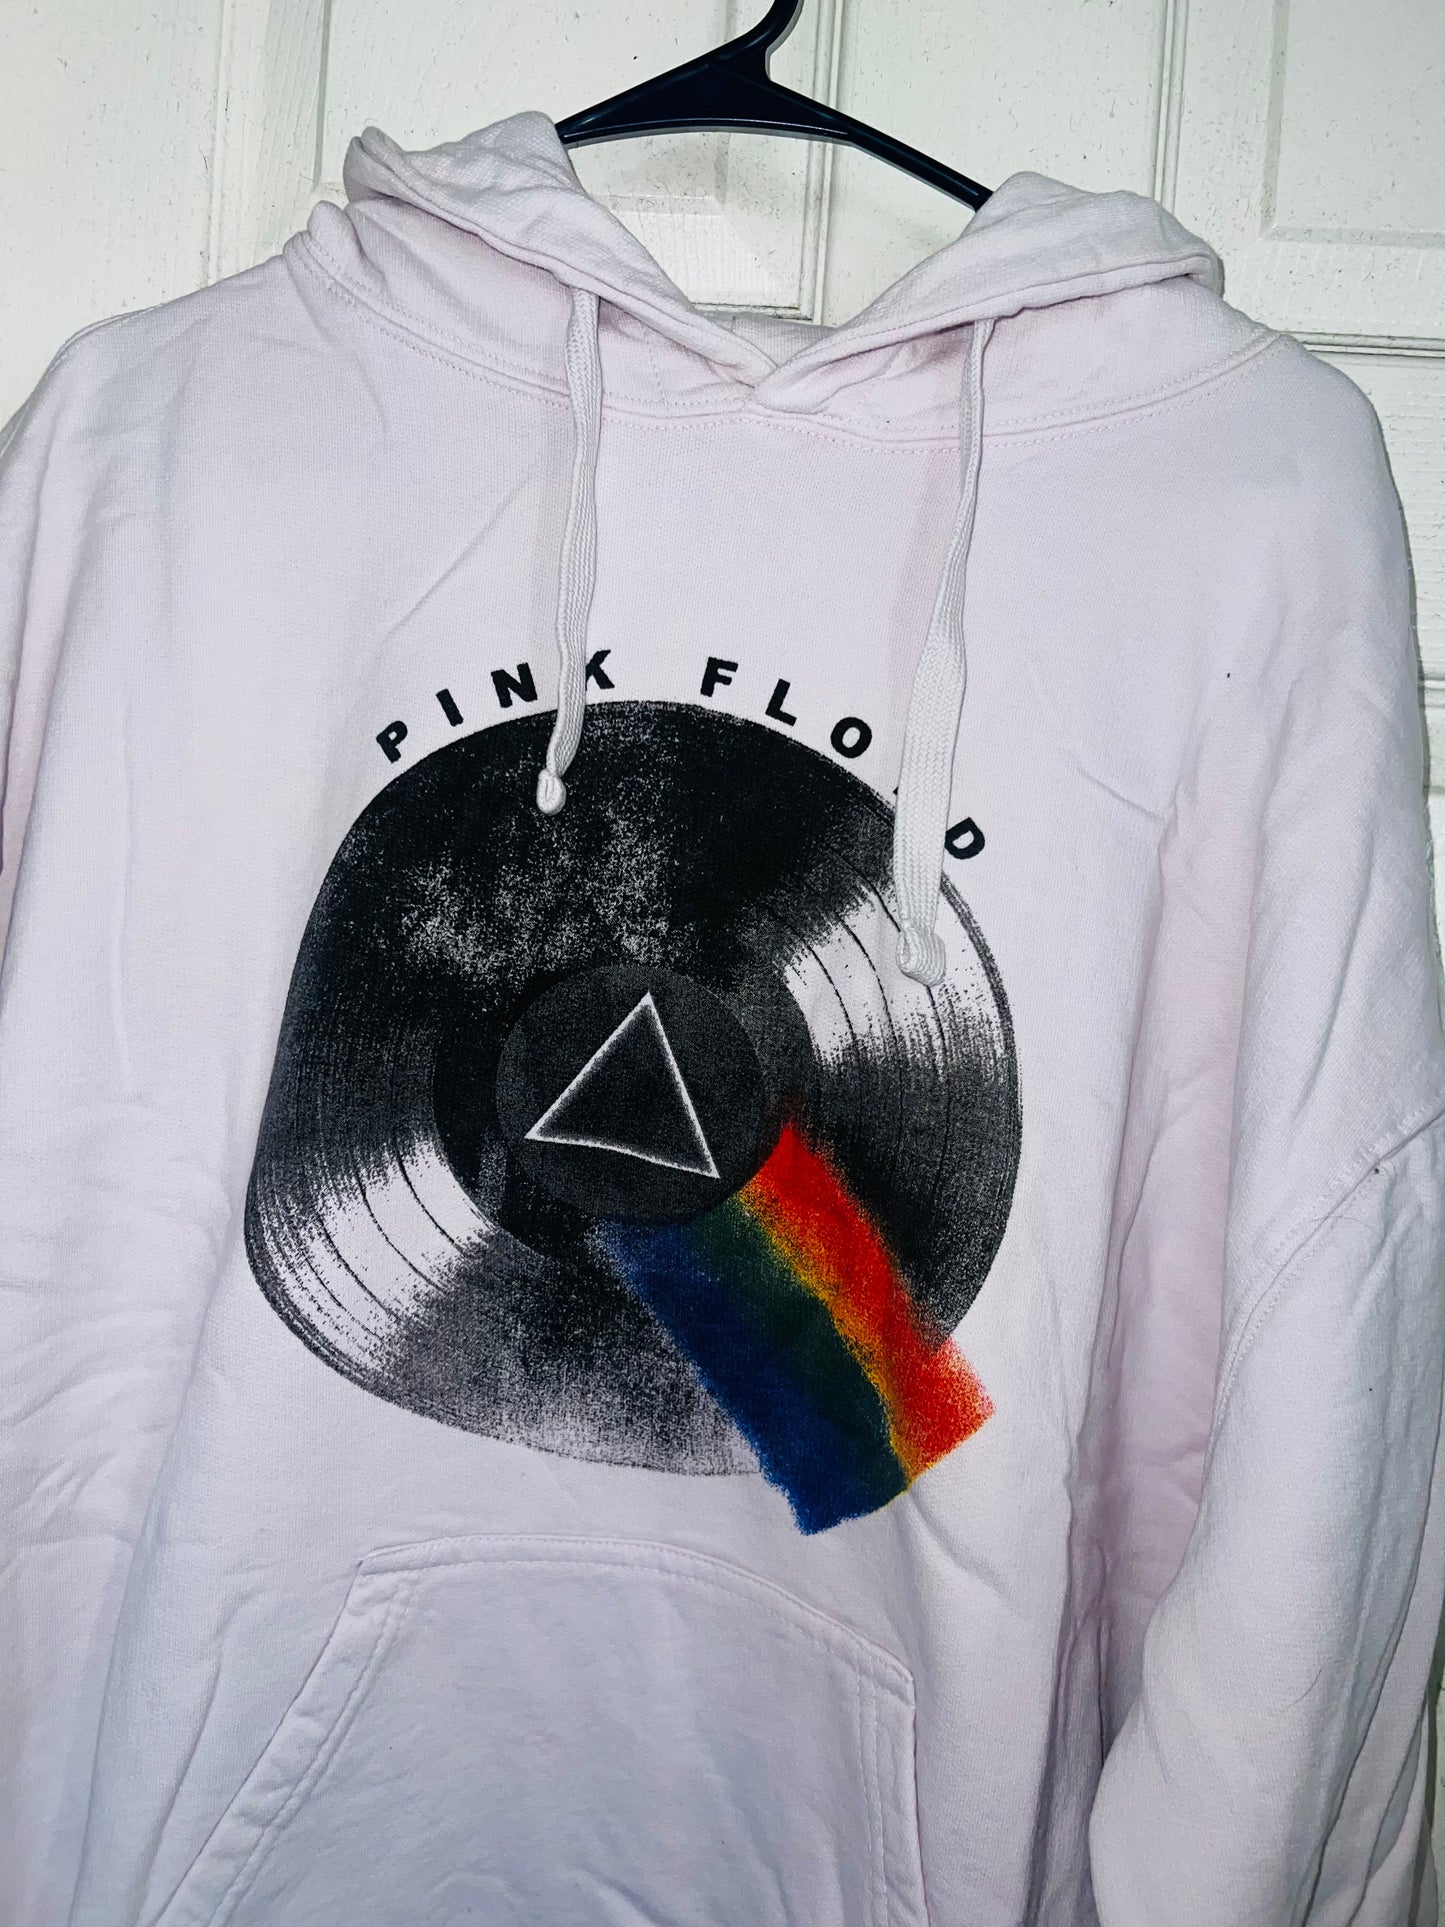 Pink Floyd Oversized Sweatshirt